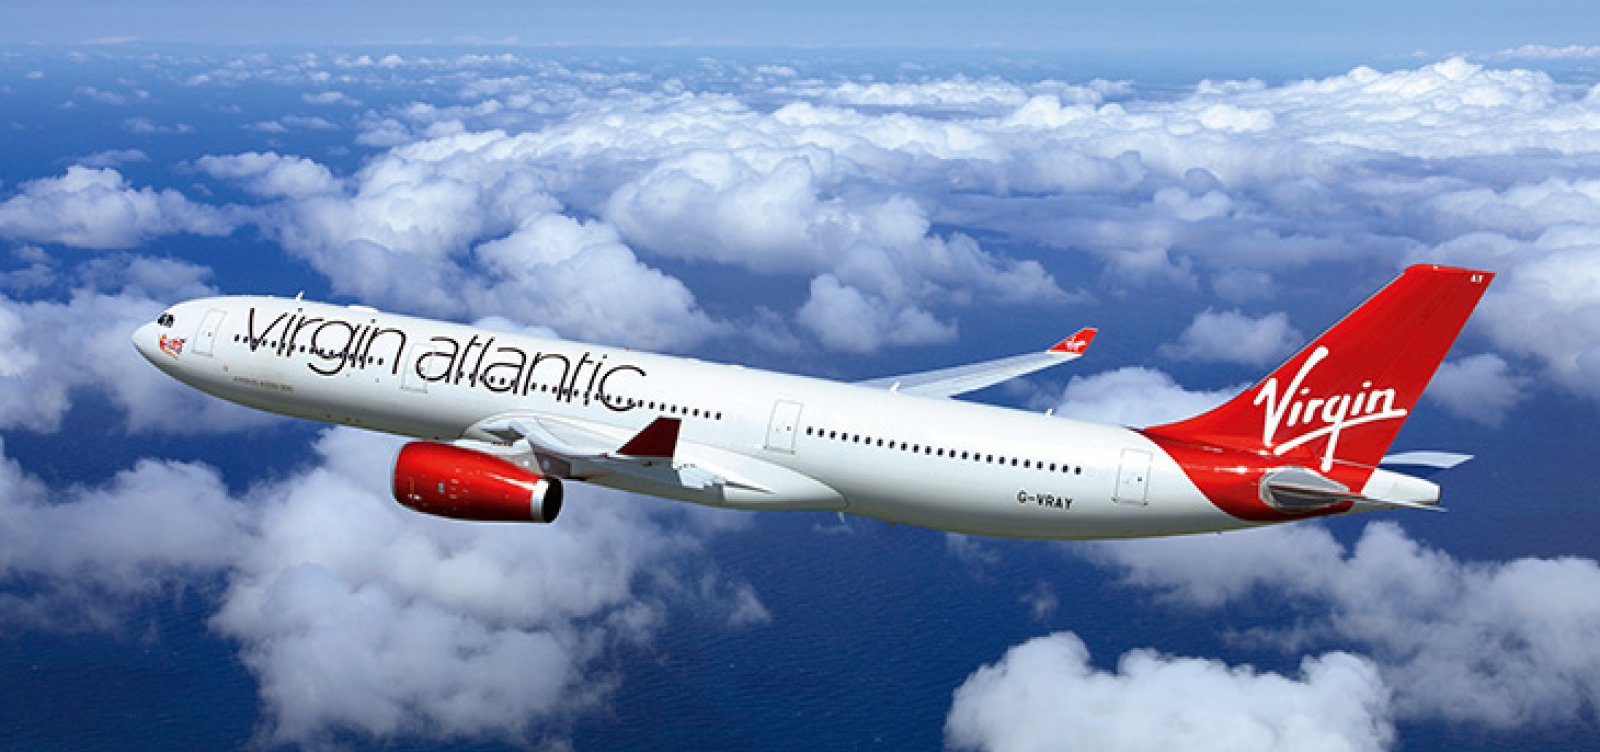 Vista aérea de um avião da Virgin Atlantic